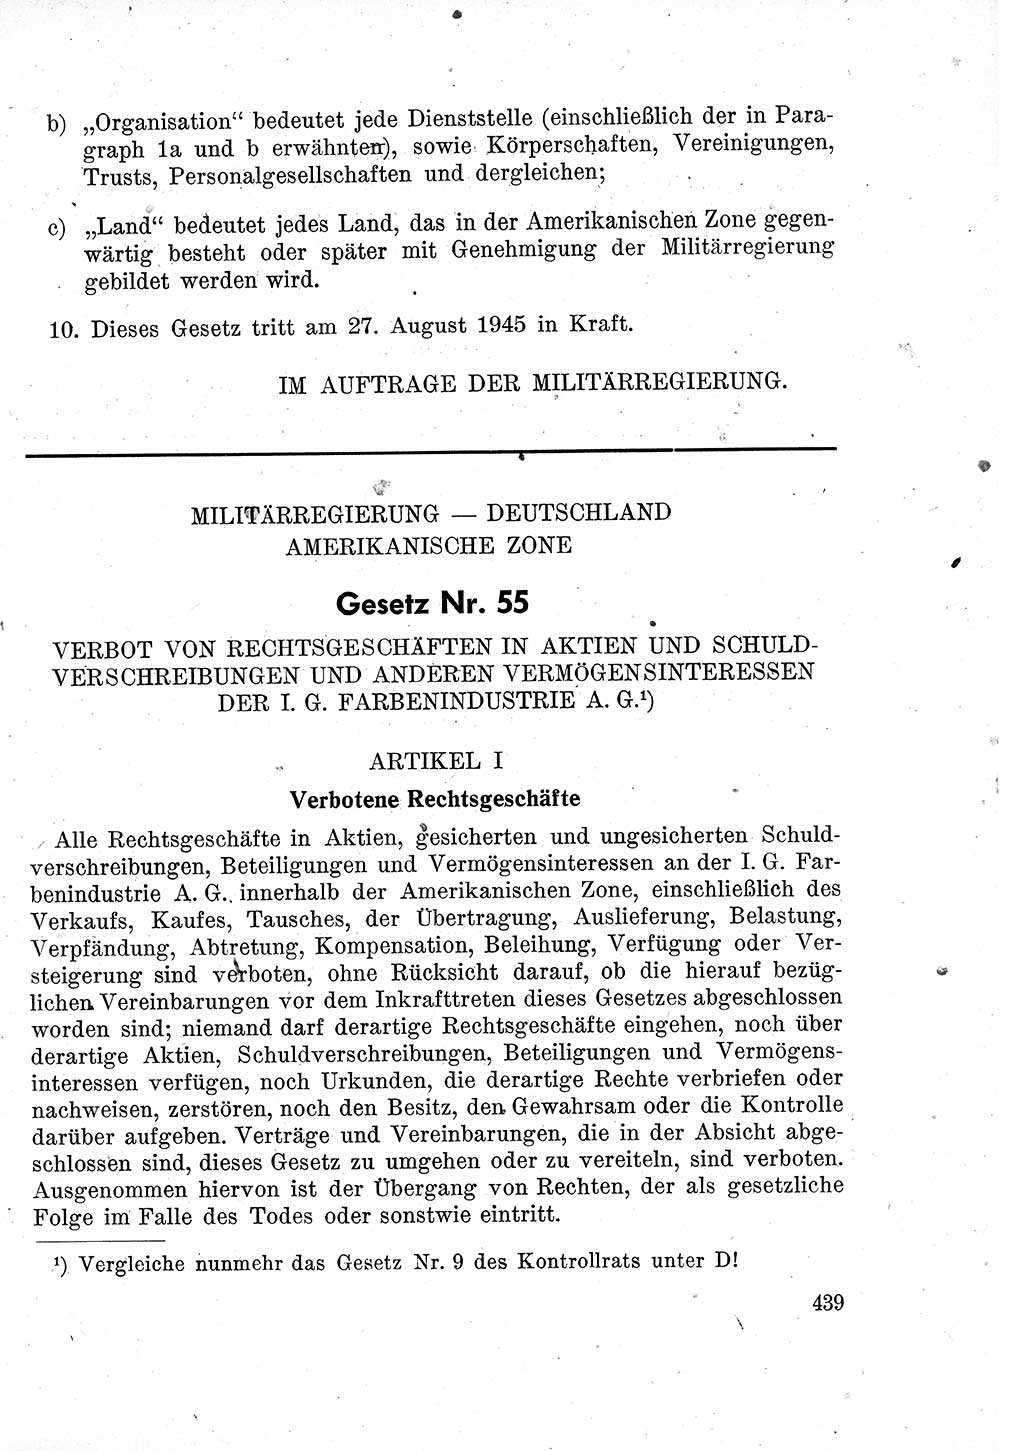 Das Recht der Besatzungsmacht (Deutschland), Proklamationen, Deklerationen, Verordnungen, Gesetze und Bekanntmachungen 1947, Seite 439 (R. Bes. Dtl. 1947, S. 439)